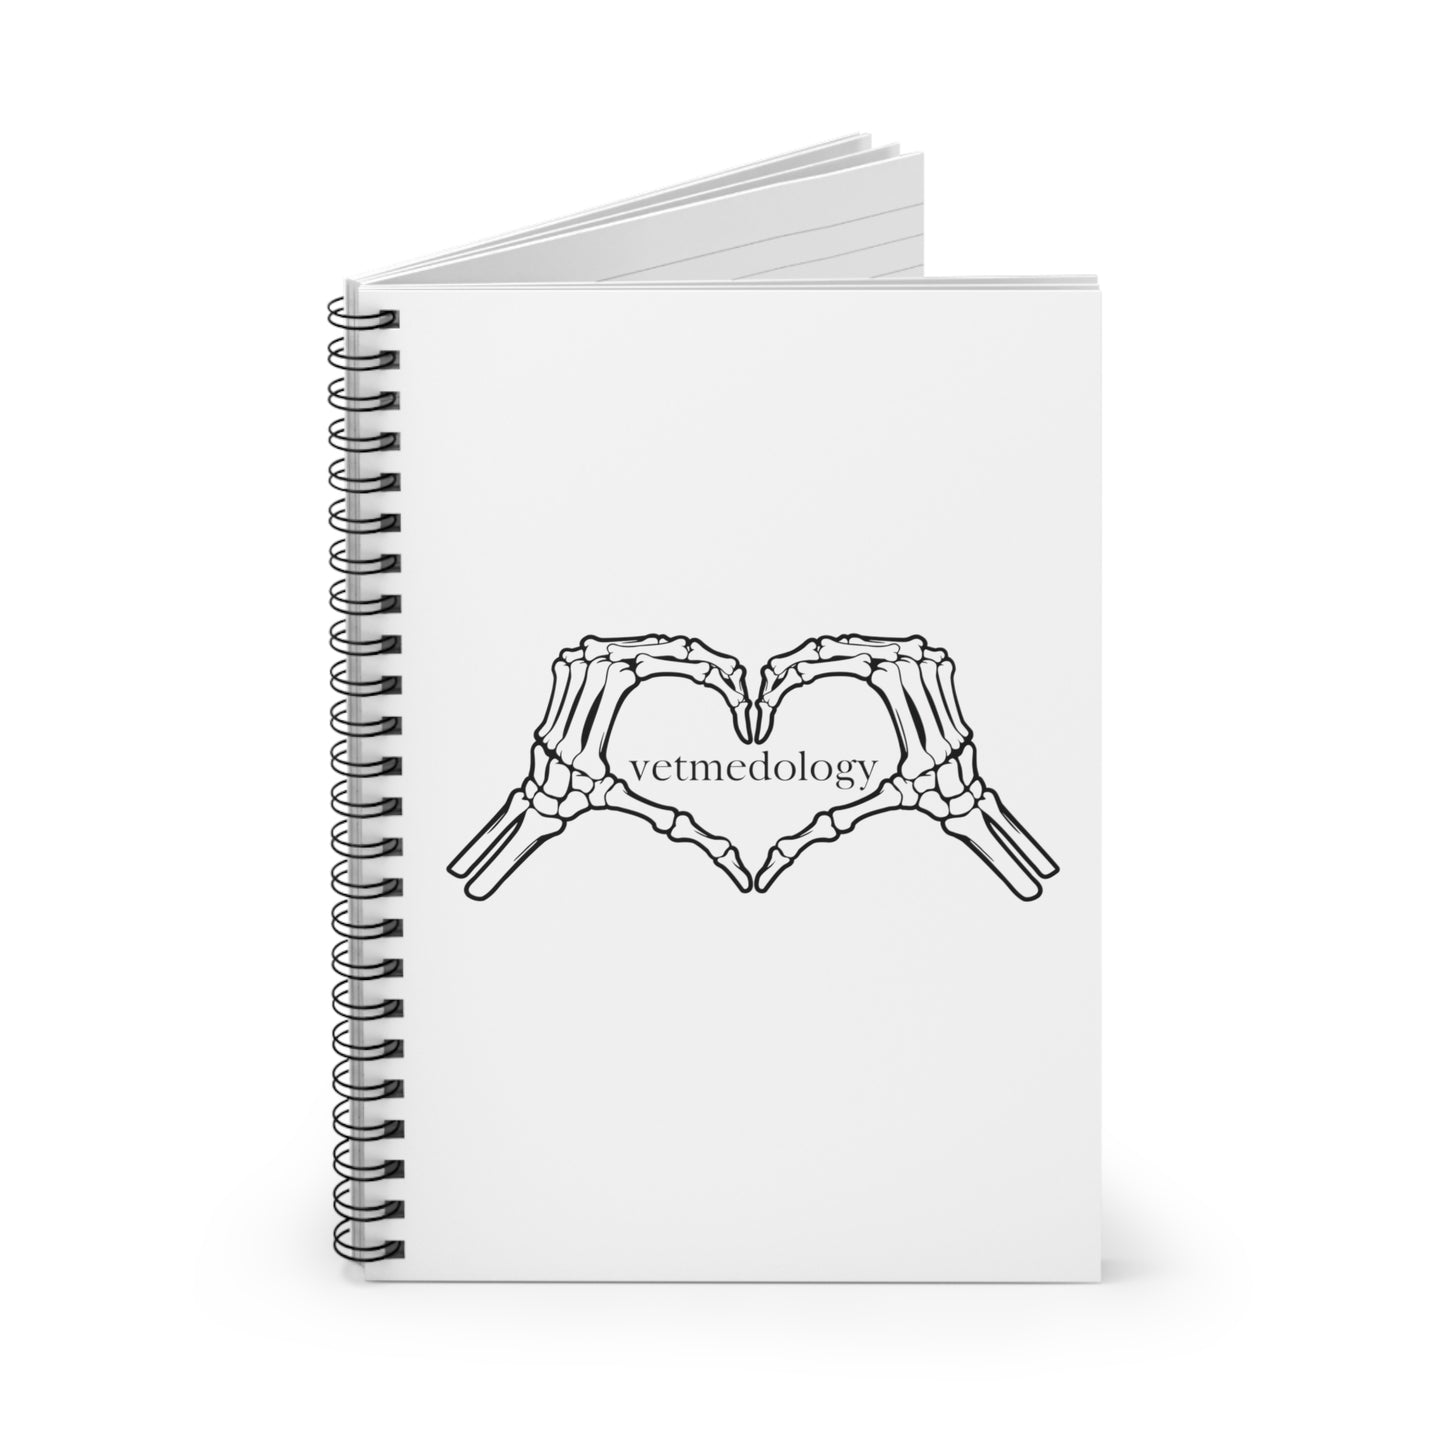 vetmedology Heart & Bones Spiral Notebook - Ruled Line